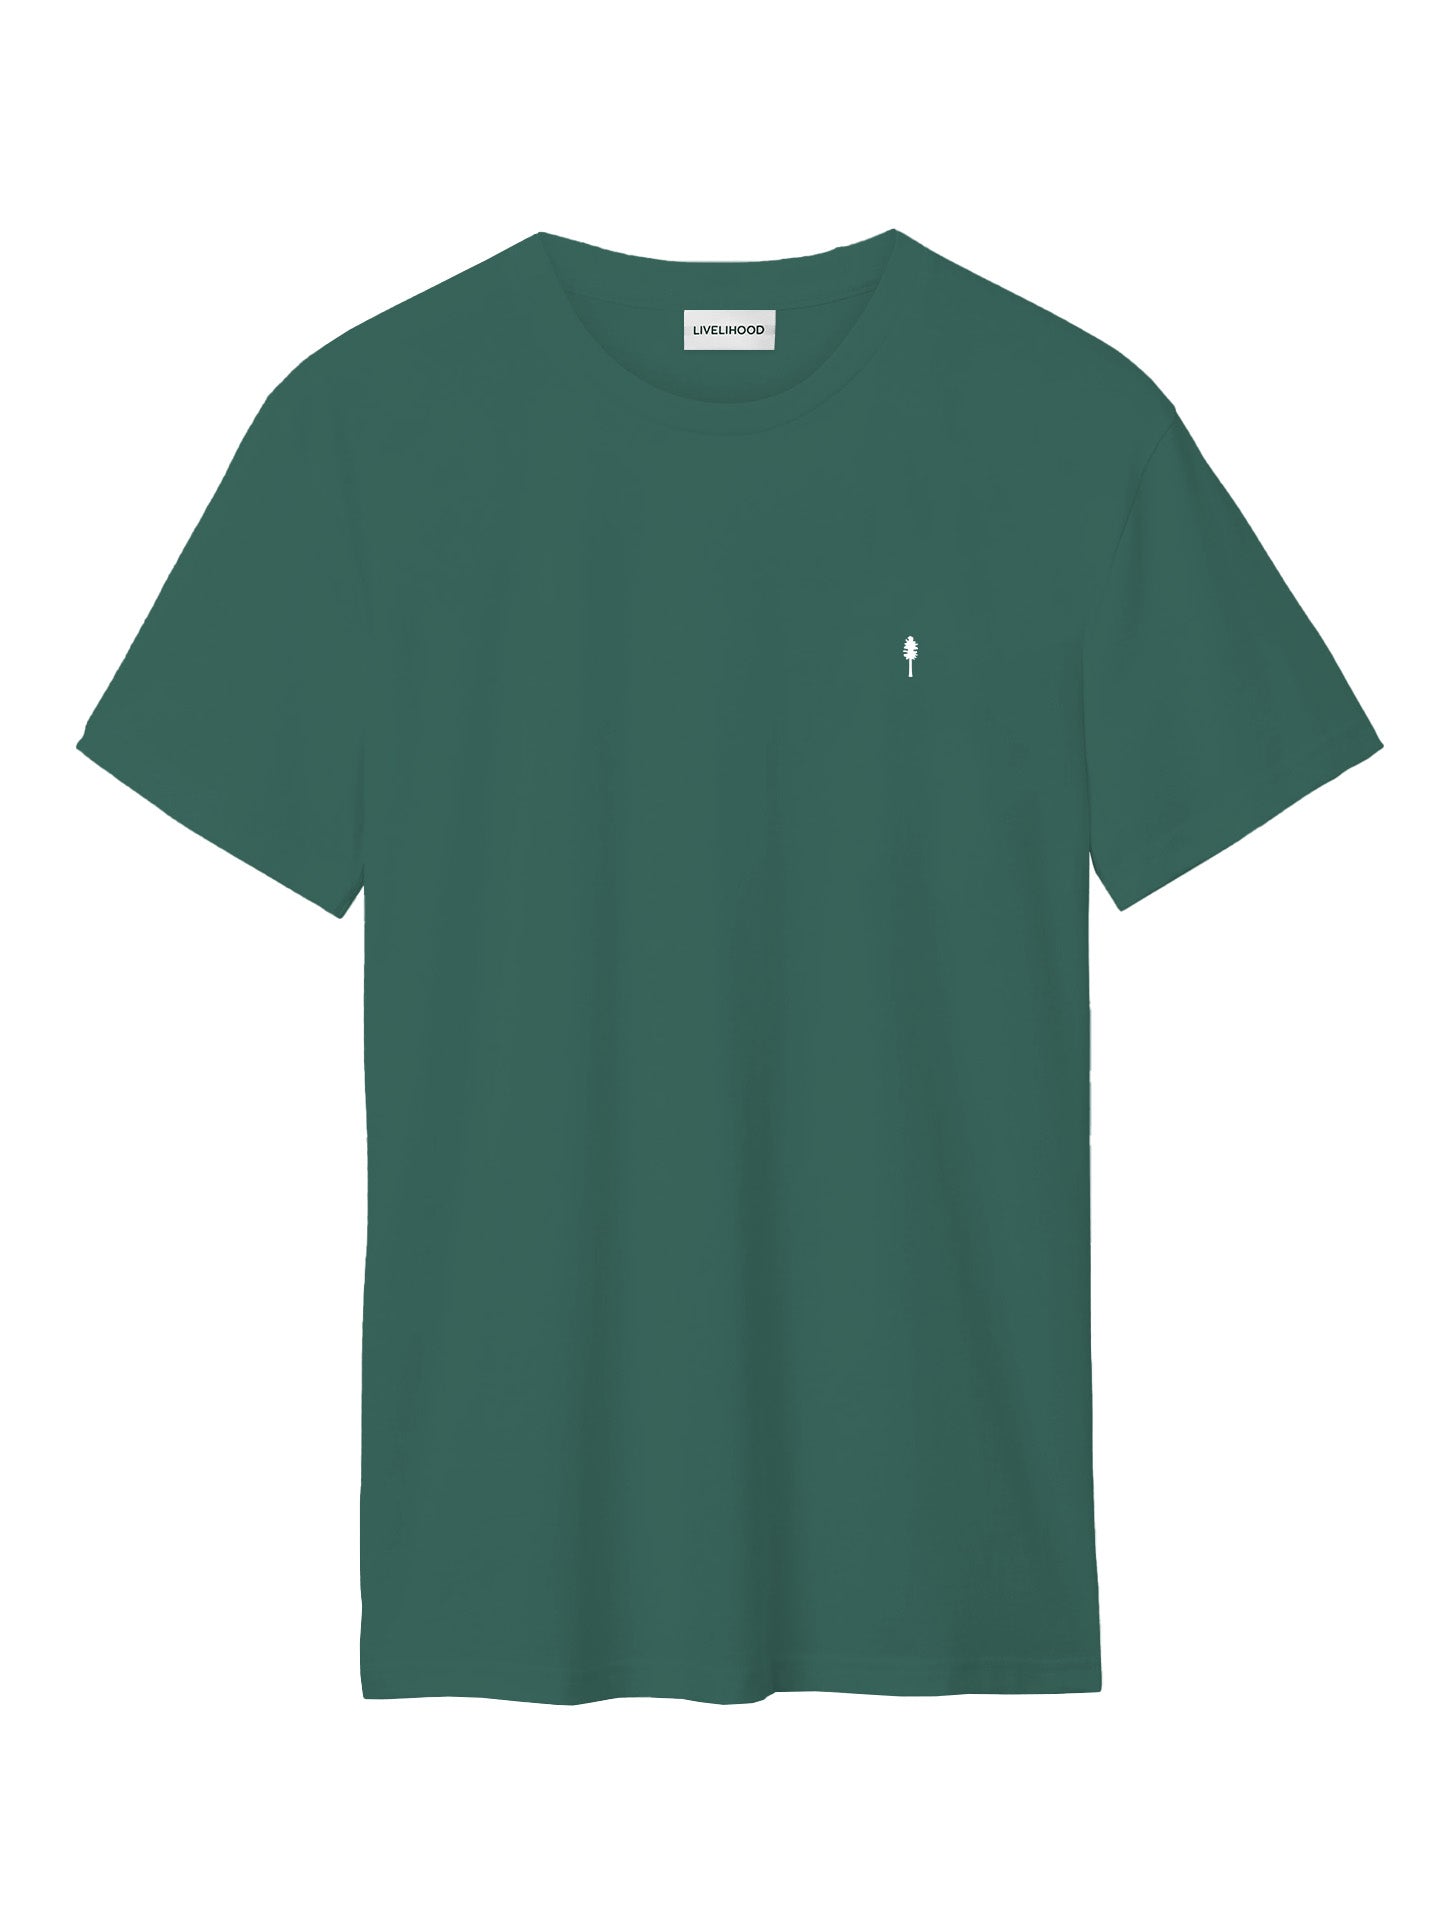 The T-Shirt - Evergreen